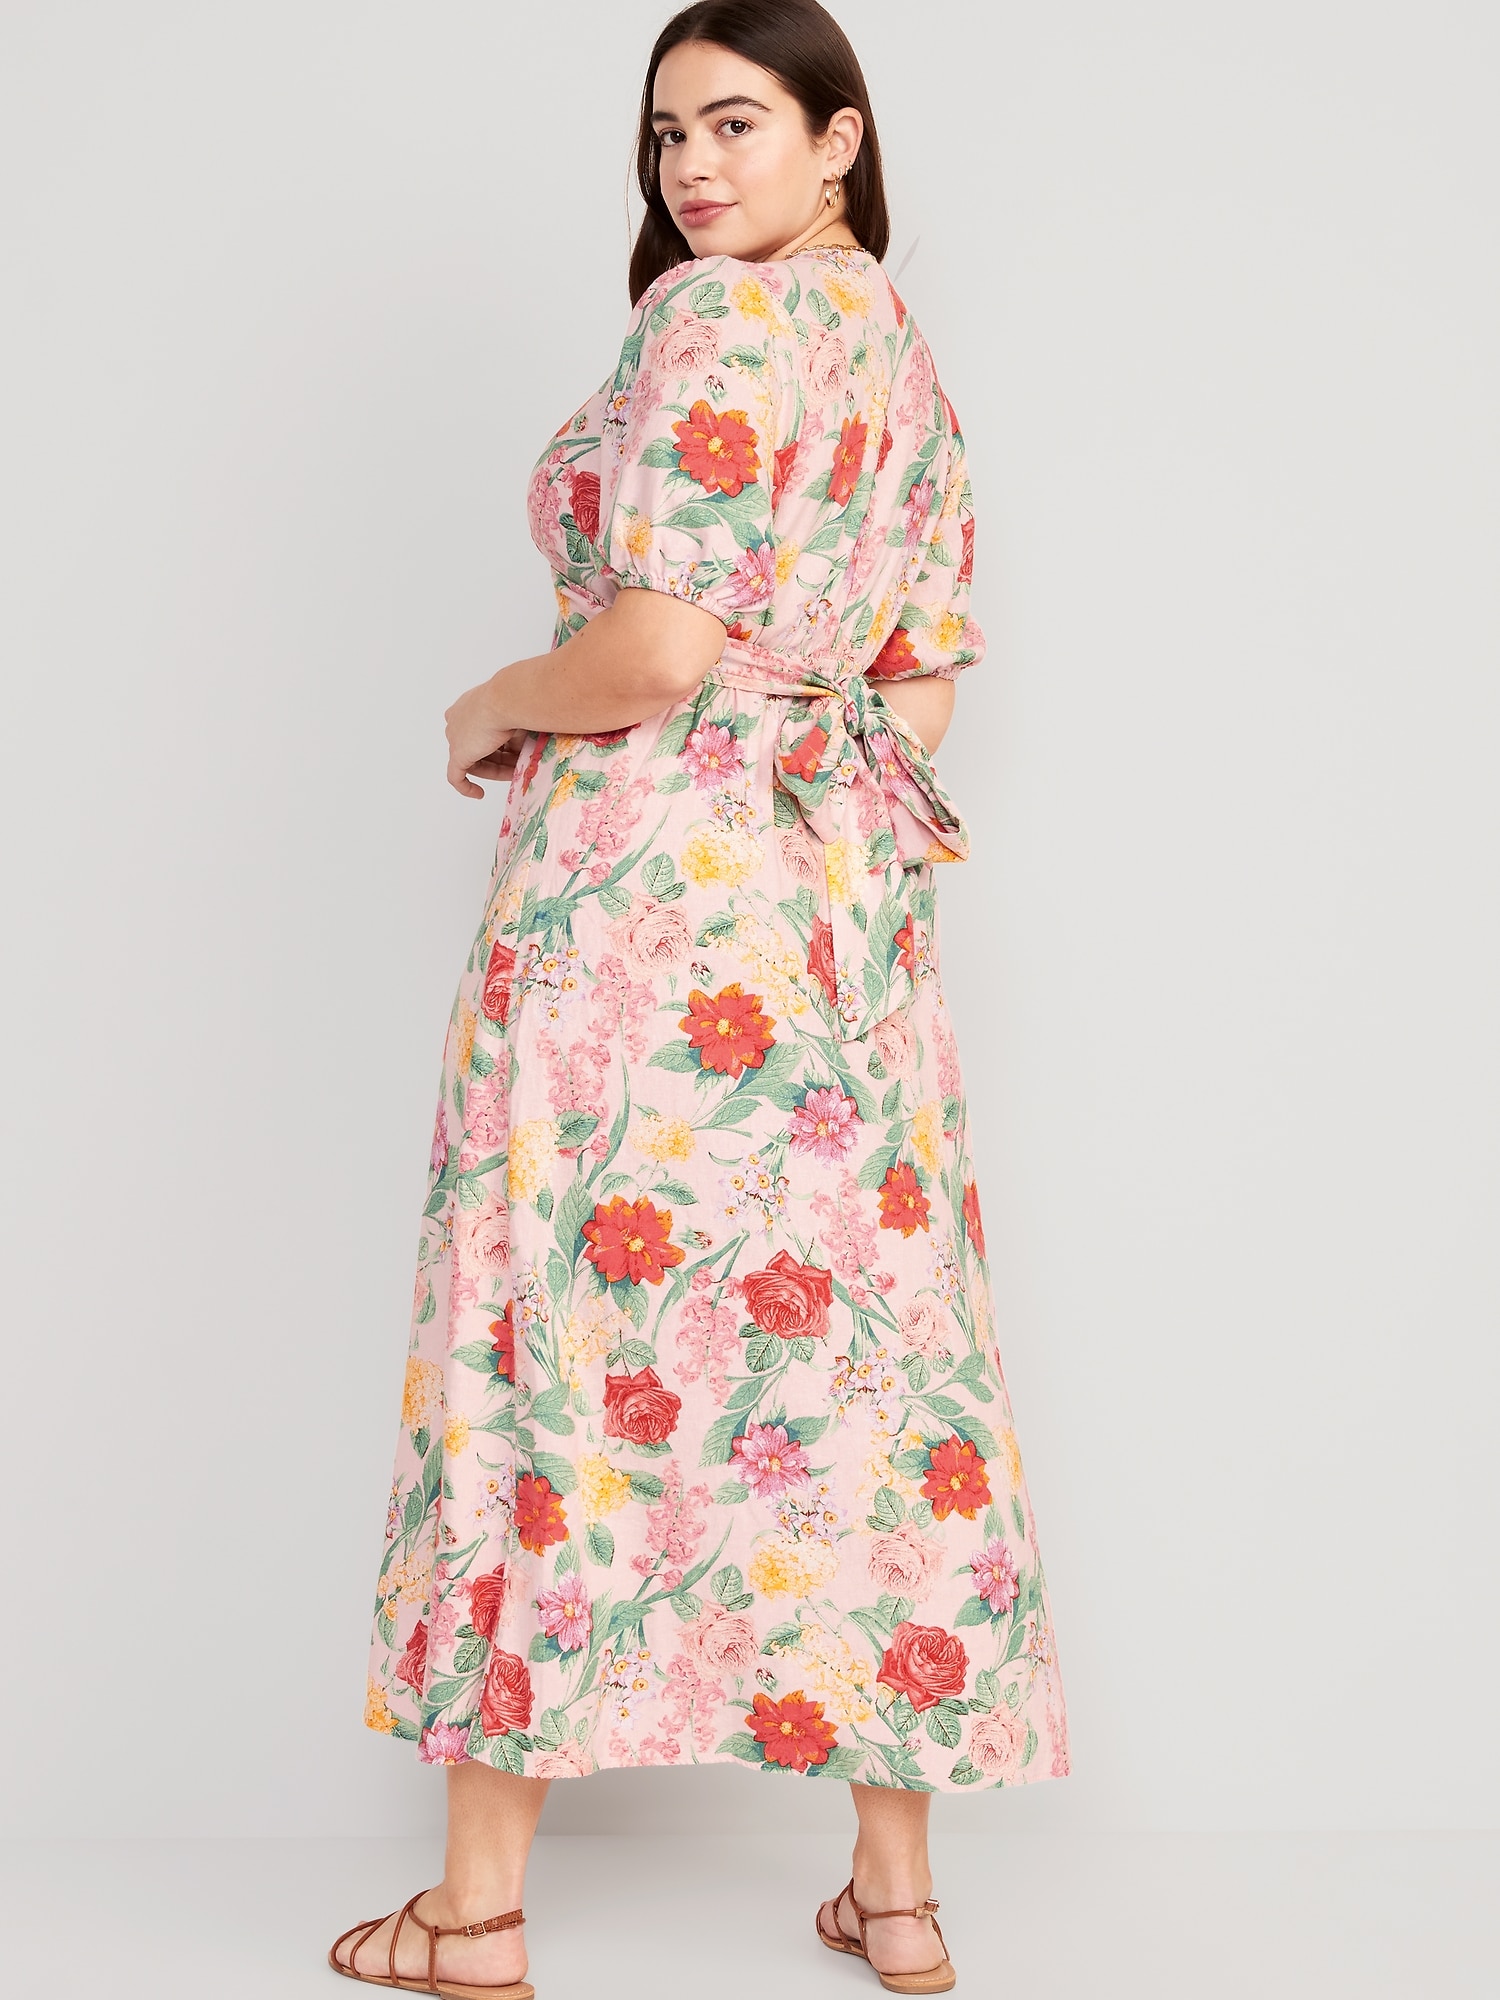 Floral linen-blend dress - Woman